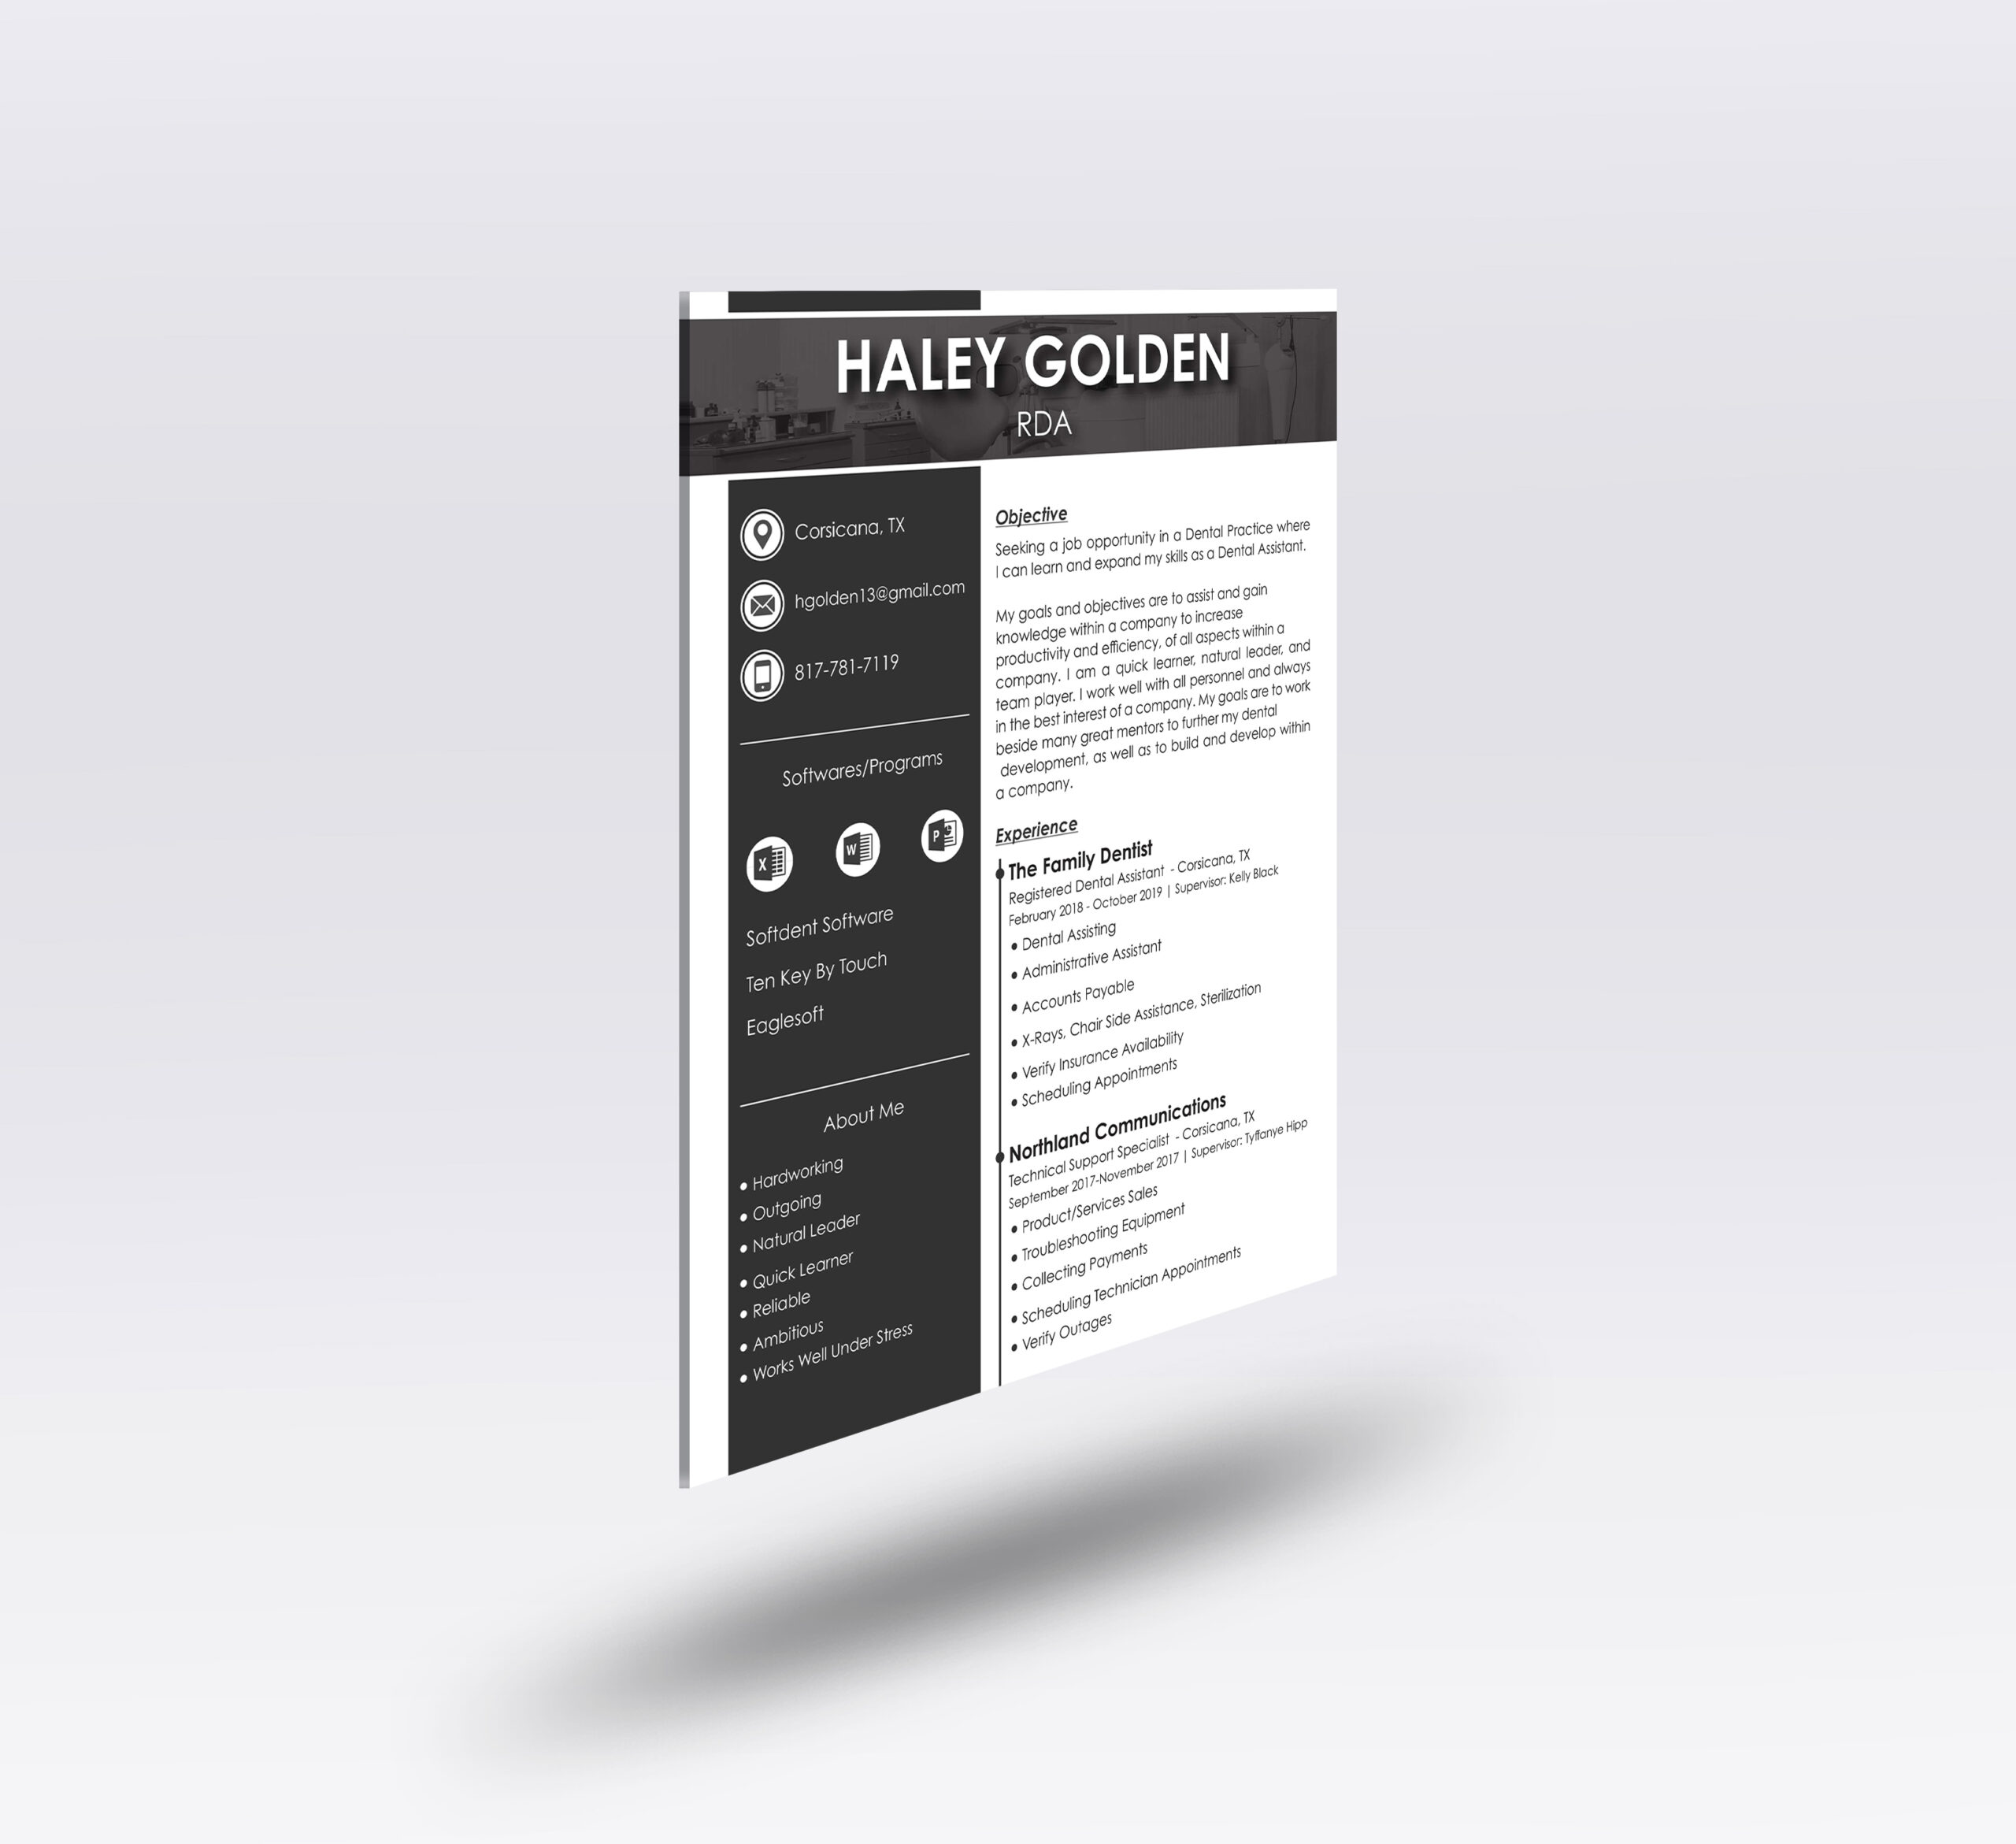 Haley Golden Resume Design - Brand and Web Design Agency